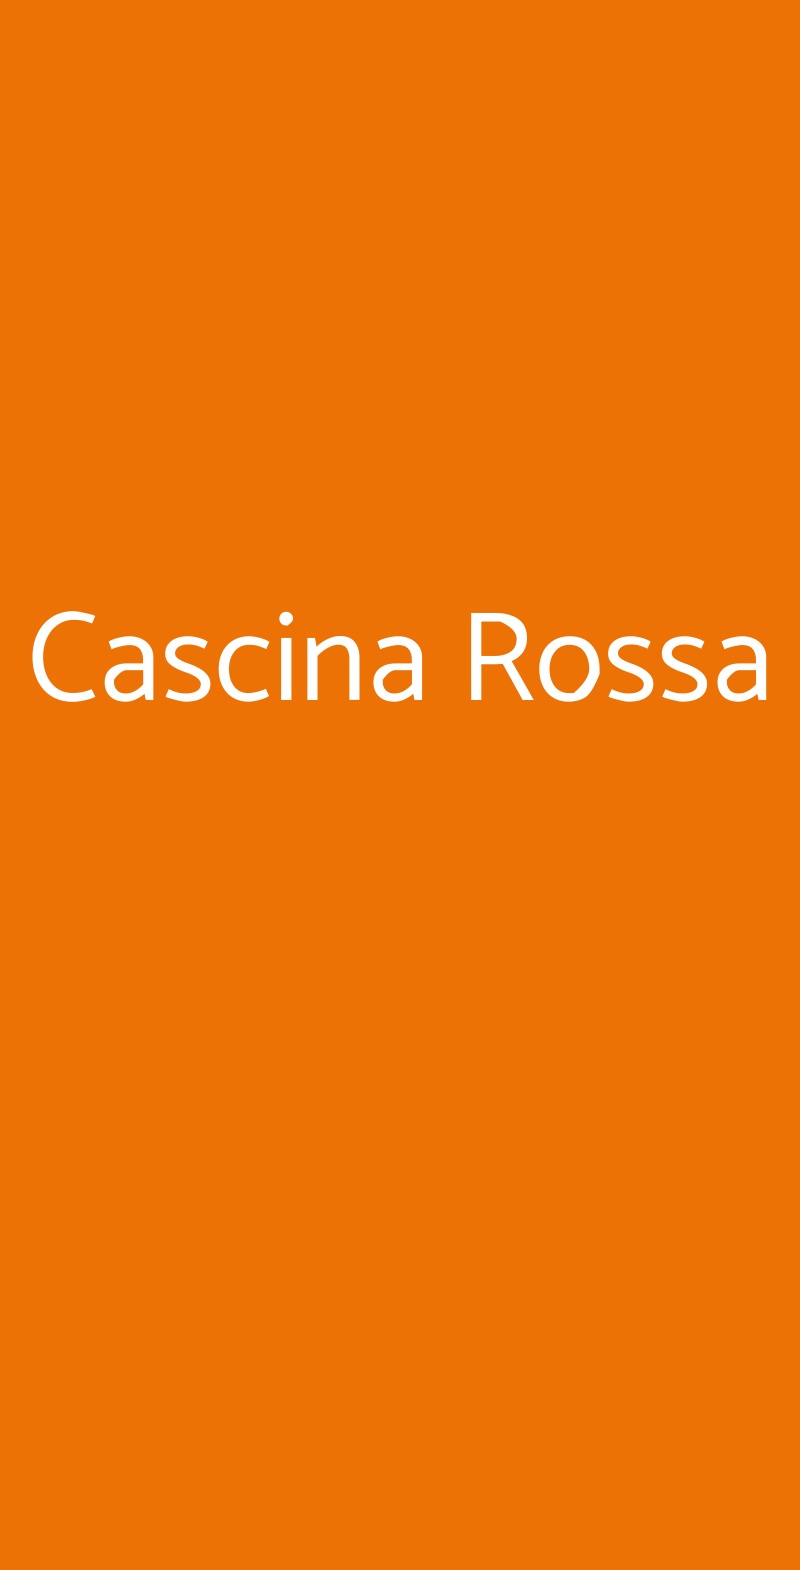 Cascina Rossa Villanova d'Asti menù 1 pagina